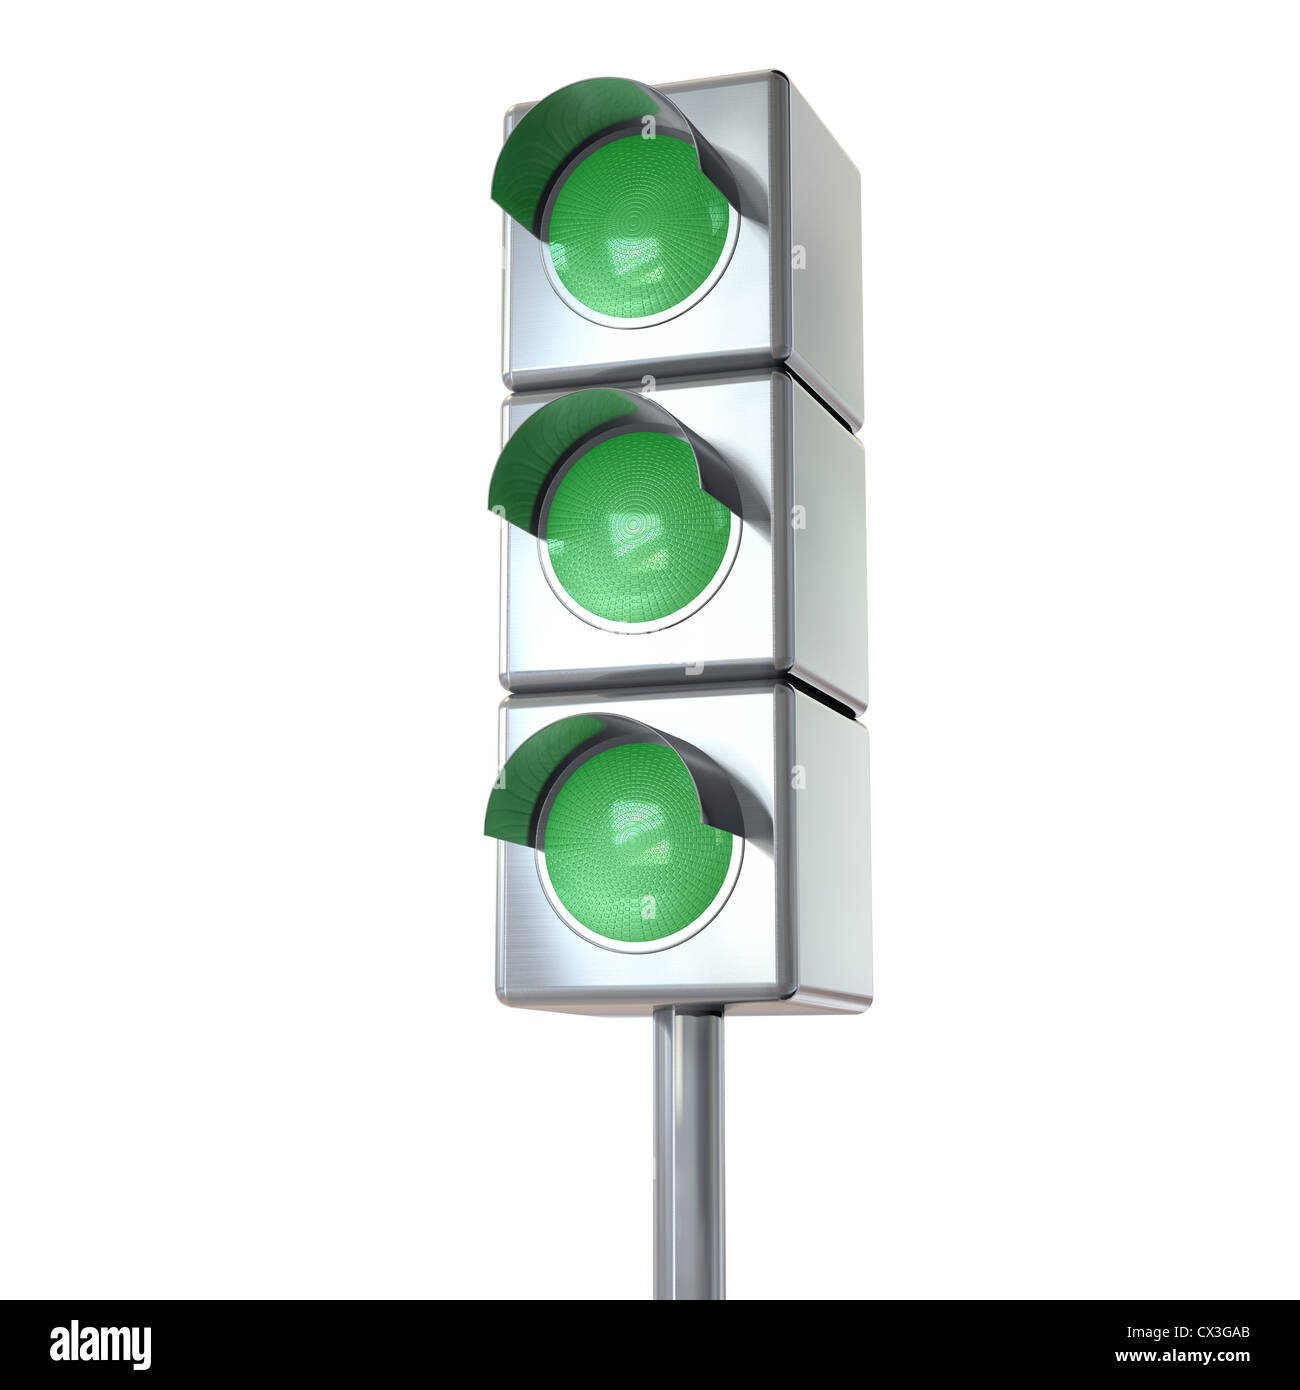 Ampel mit 3 grünen Lichtern auf weiß - Green Lights on White Background Stock Photo